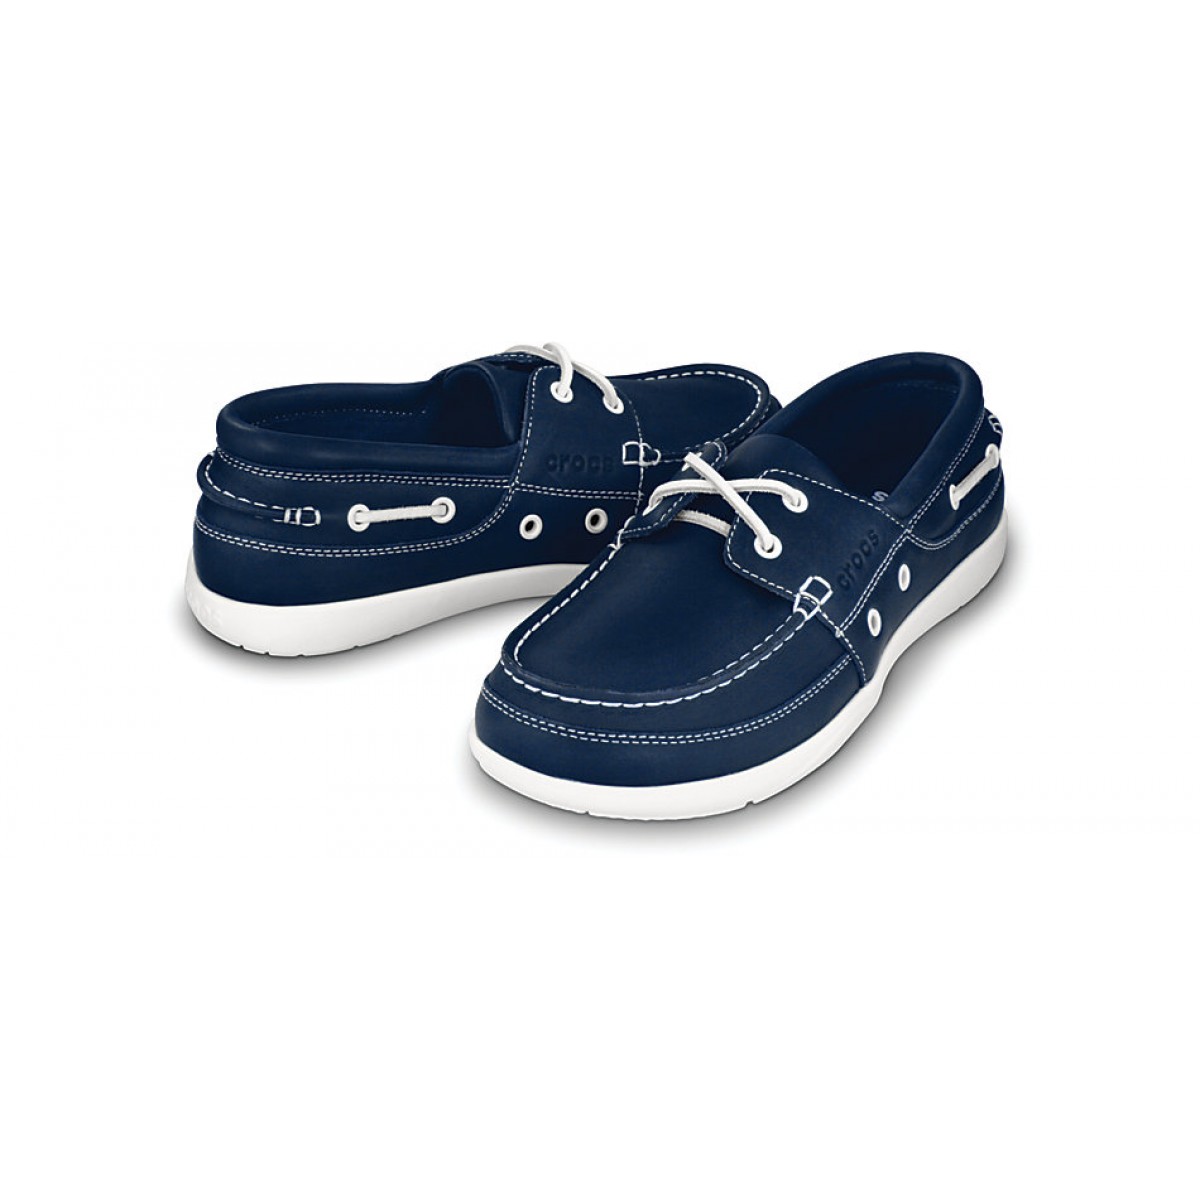 Crocs Harborline 11371 Brown Leather Moccasin Boat Shoes Men's 7M,  Women's SZ 9M | eBay